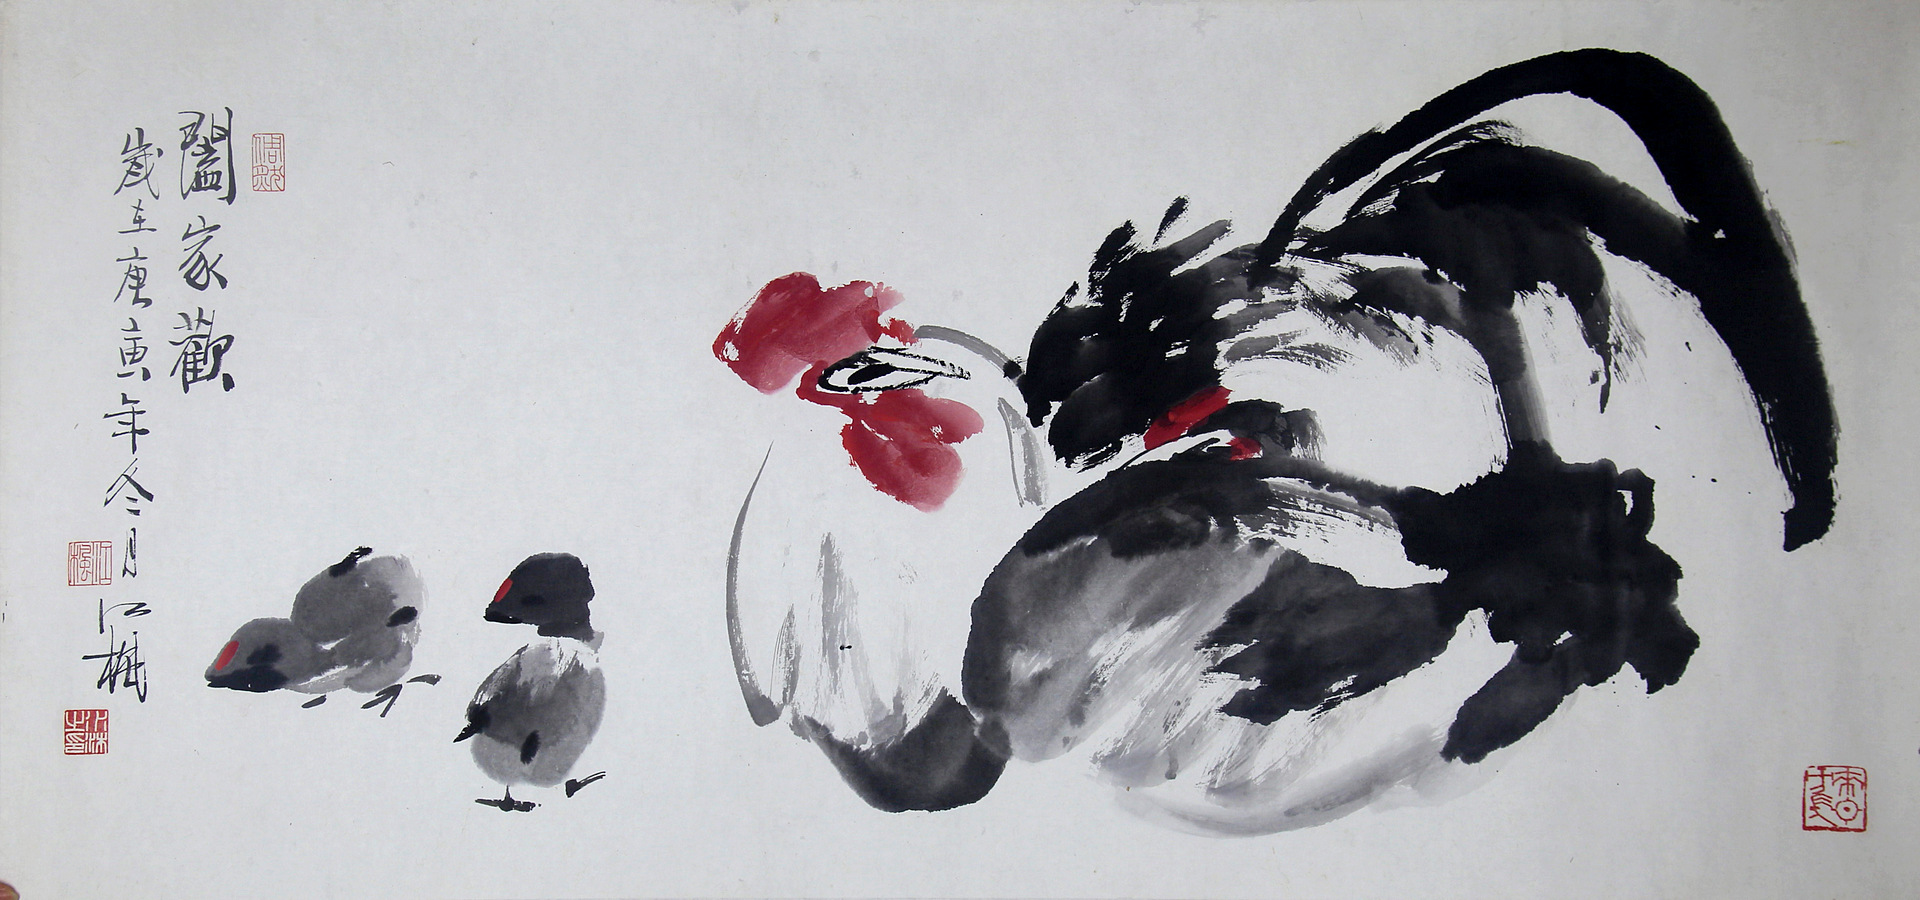 《合家欢》写意家禽·雄鸡 纸本水墨设色 2010年